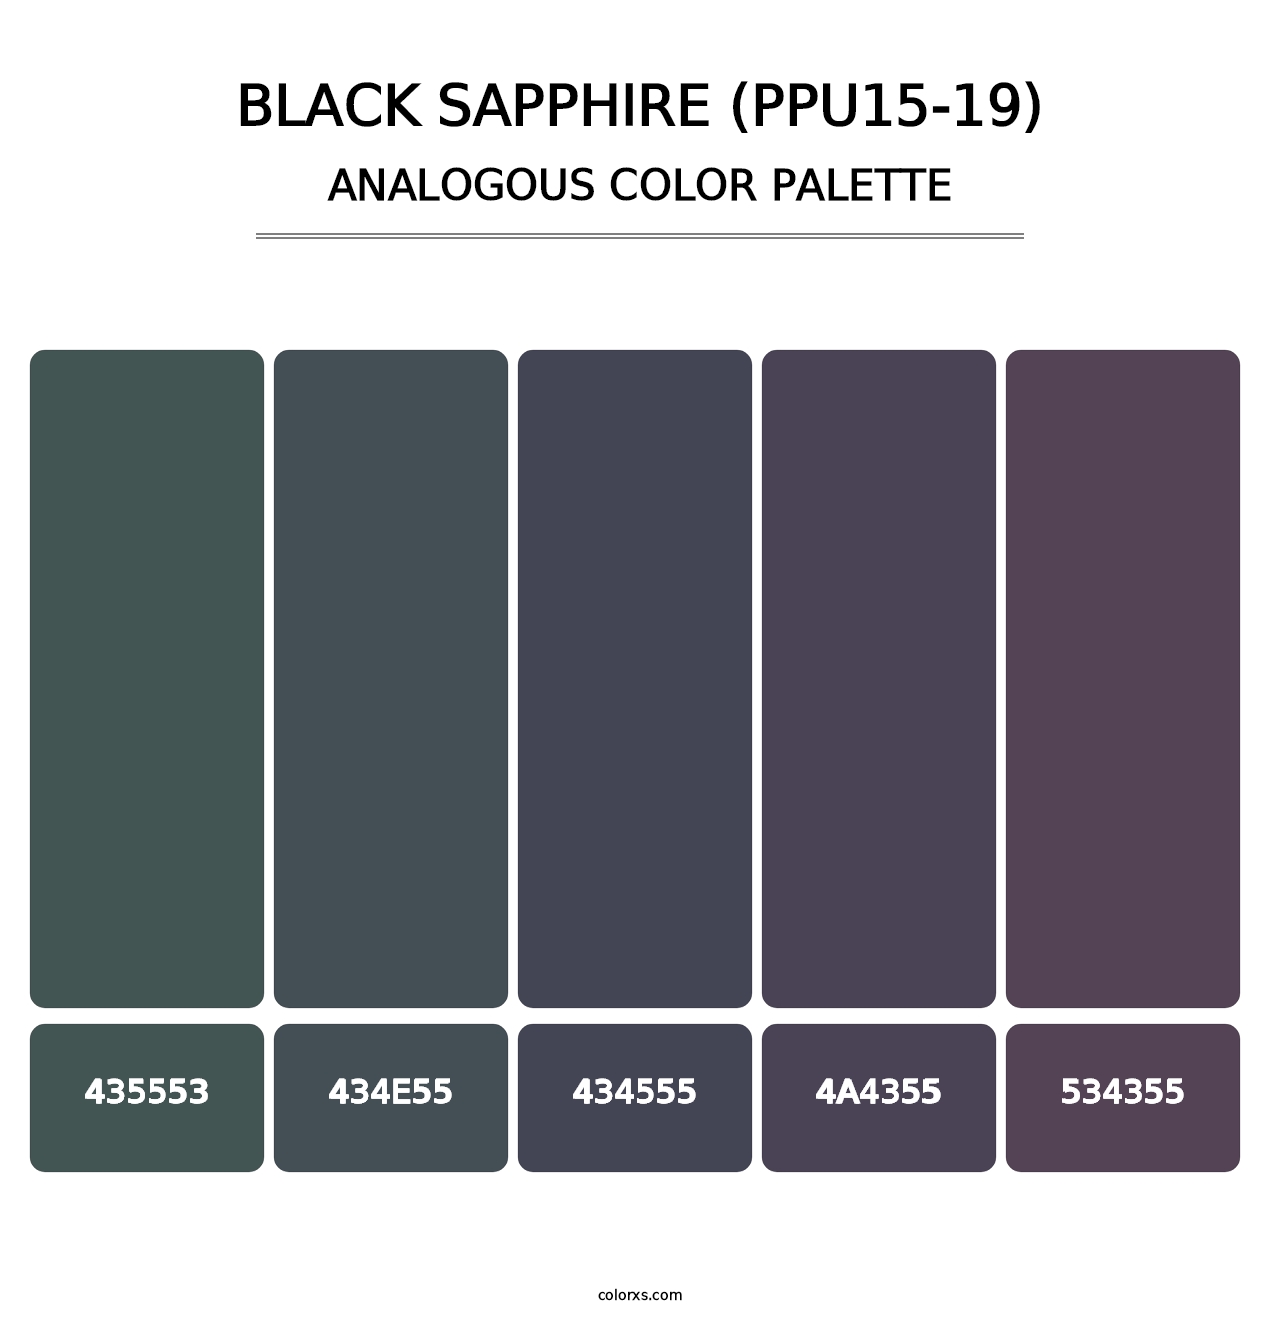 Black Sapphire (PPU15-19) - Analogous Color Palette